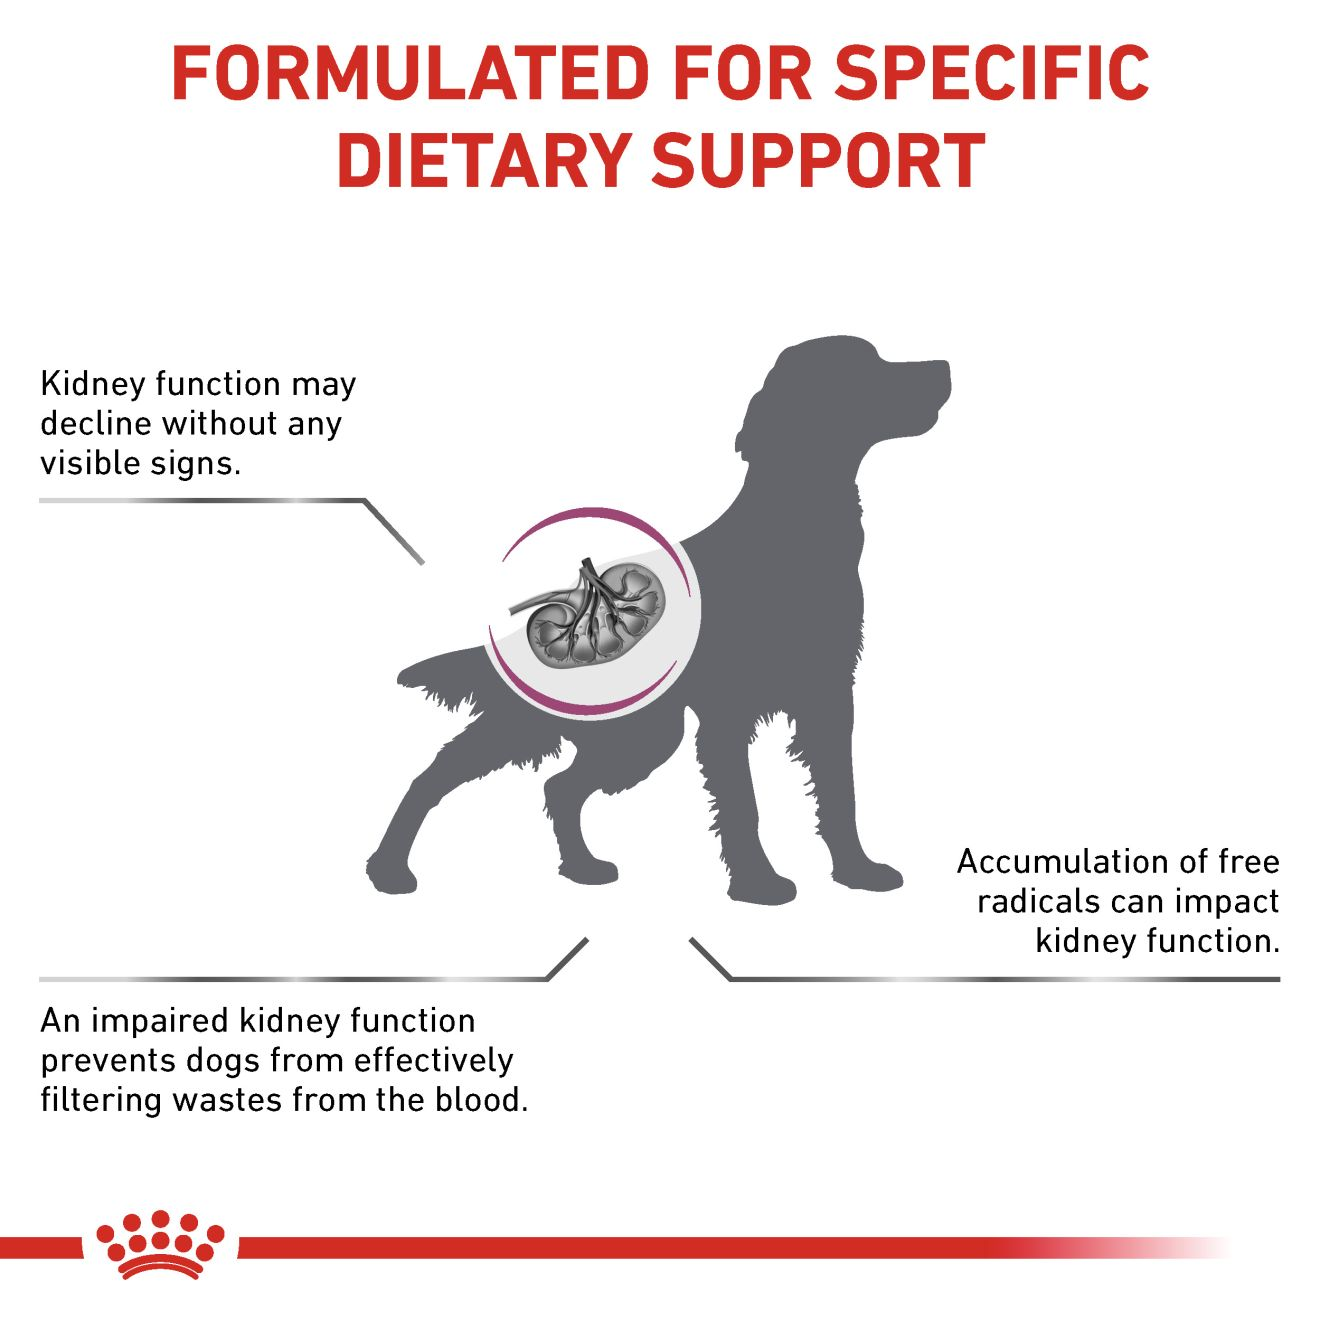 อาหารสุนัขประกอบการรักษาโรคไตในระยะเริ่มต้น ชนิดเม็ด (EARLY RENAL)